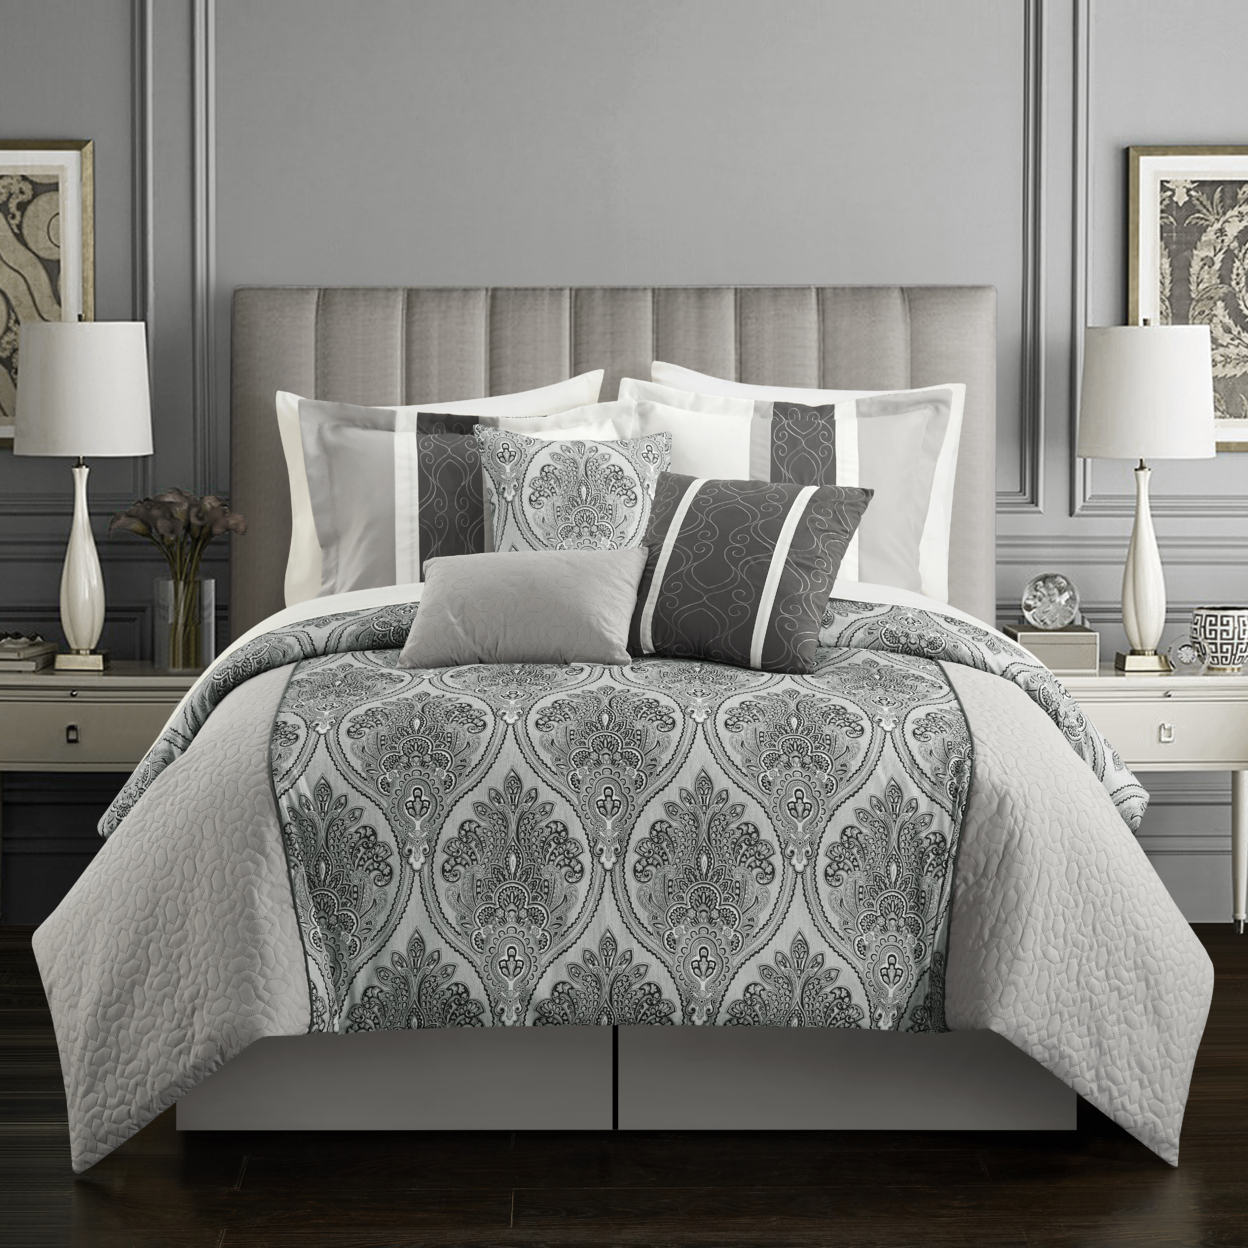 Phantogram 7 Piece Reversible Geometric Damask Pattern Comforter Set - Grey, King